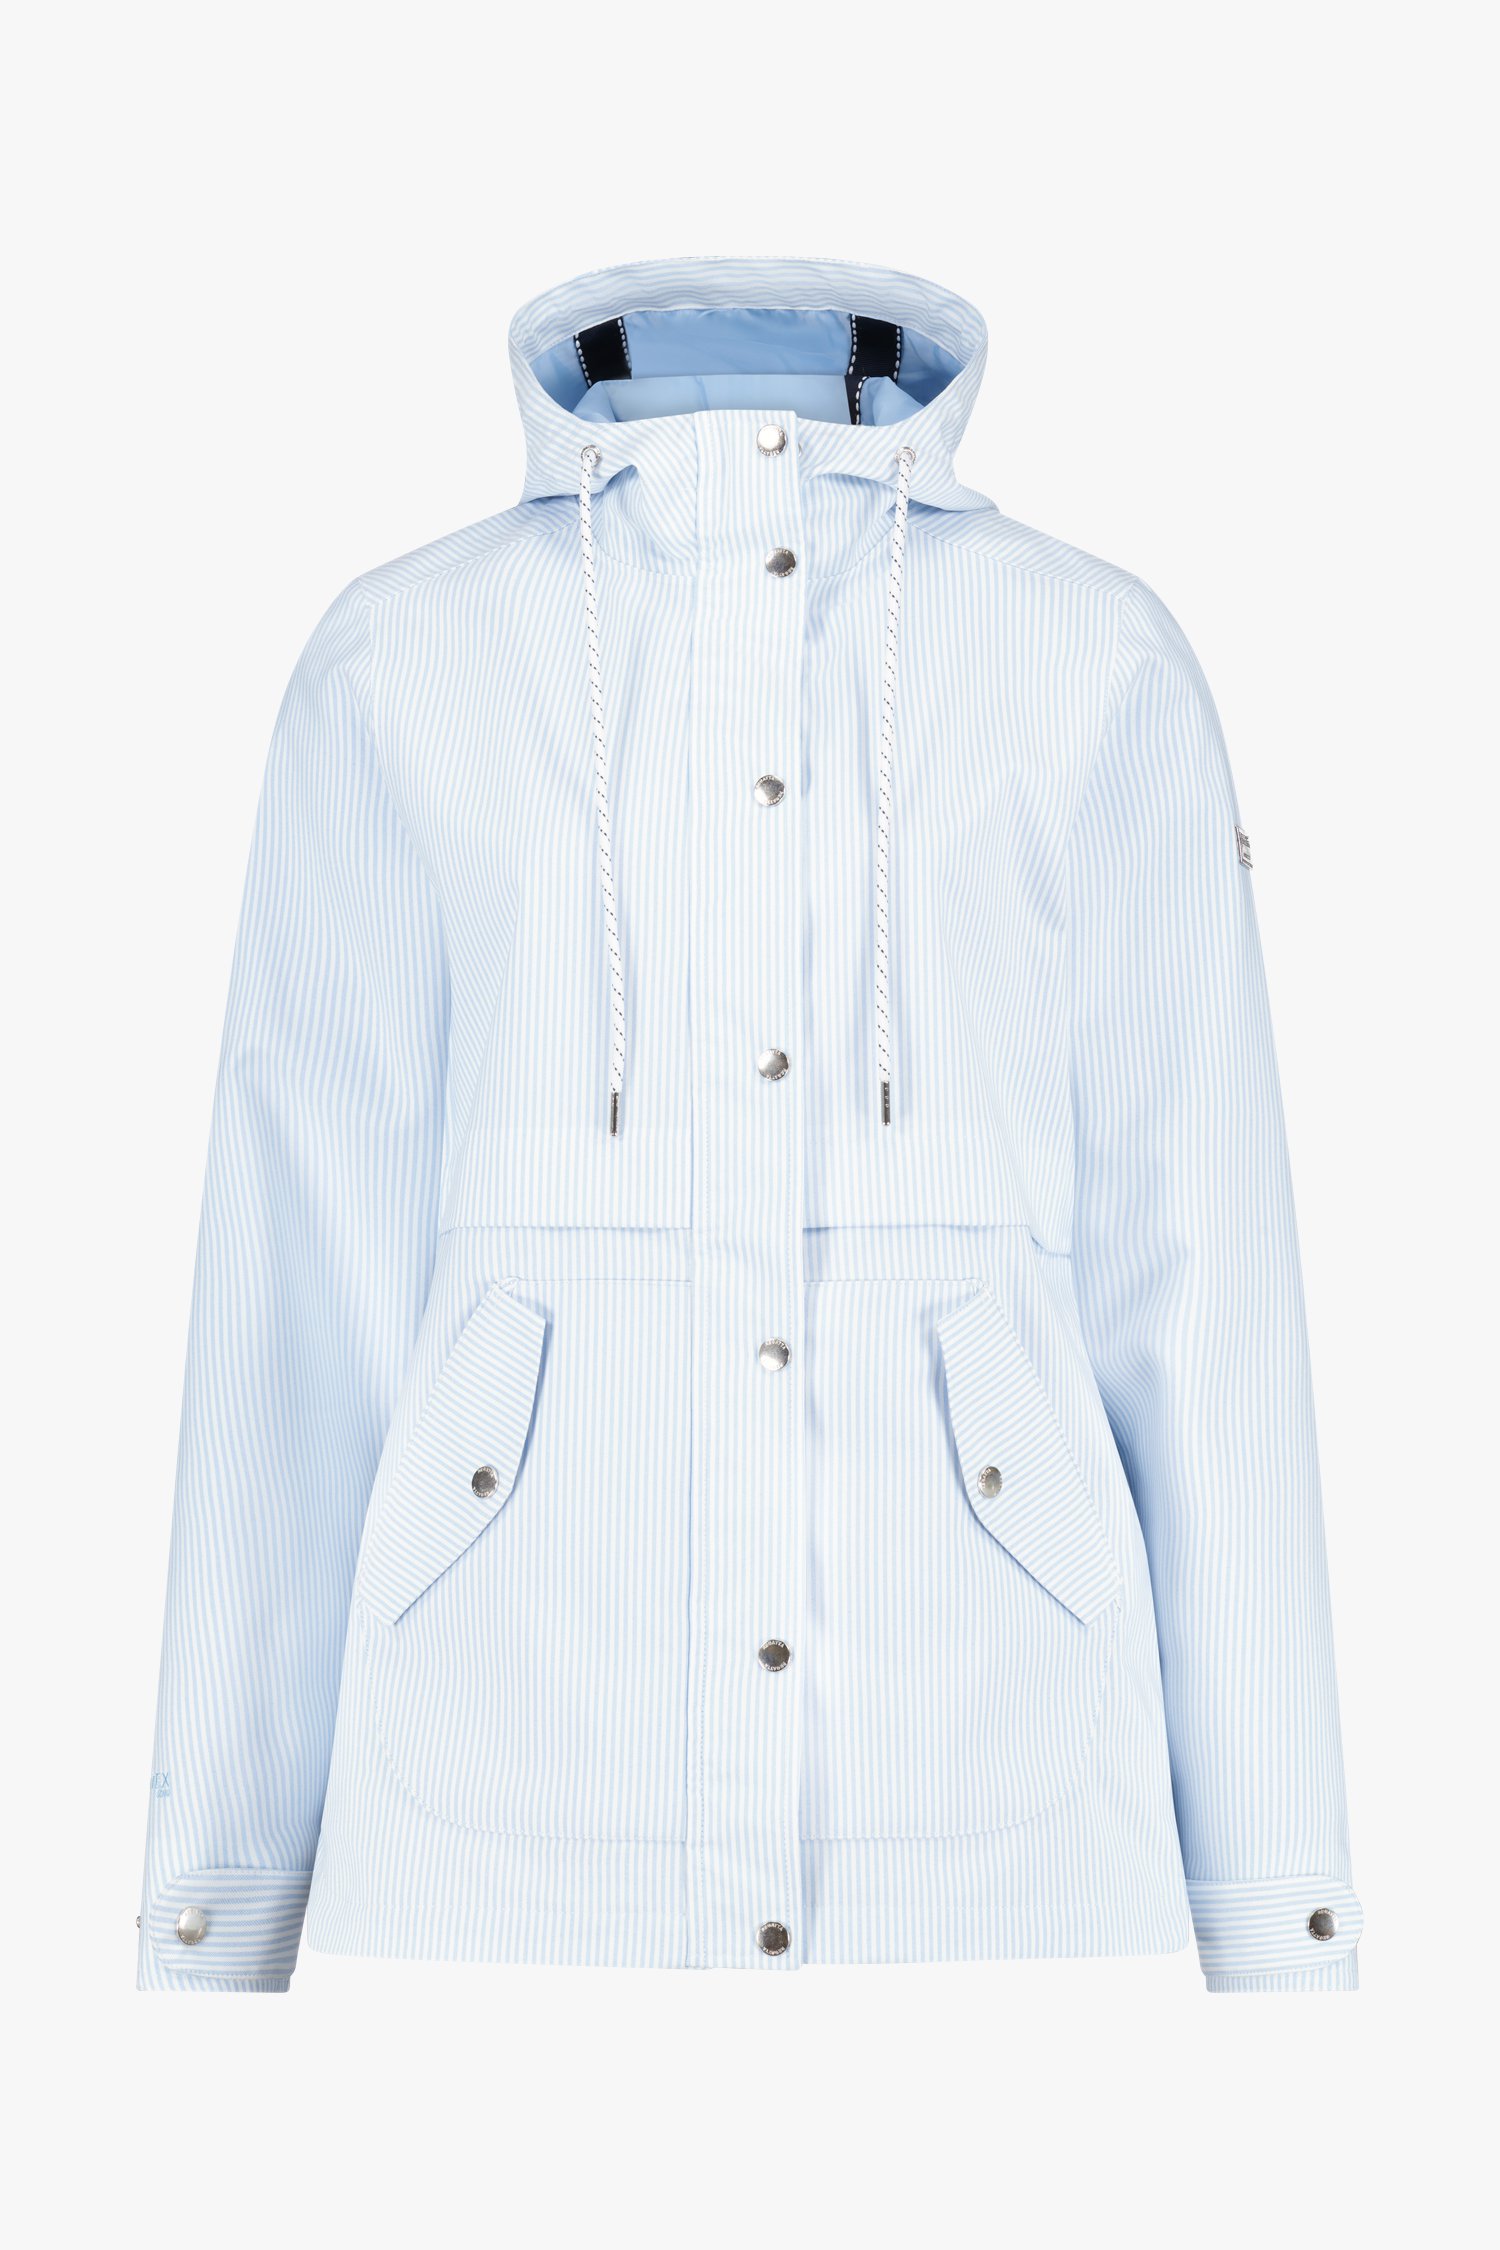 Manteau à rayures bleues et blanches de Regatta pour Femmes